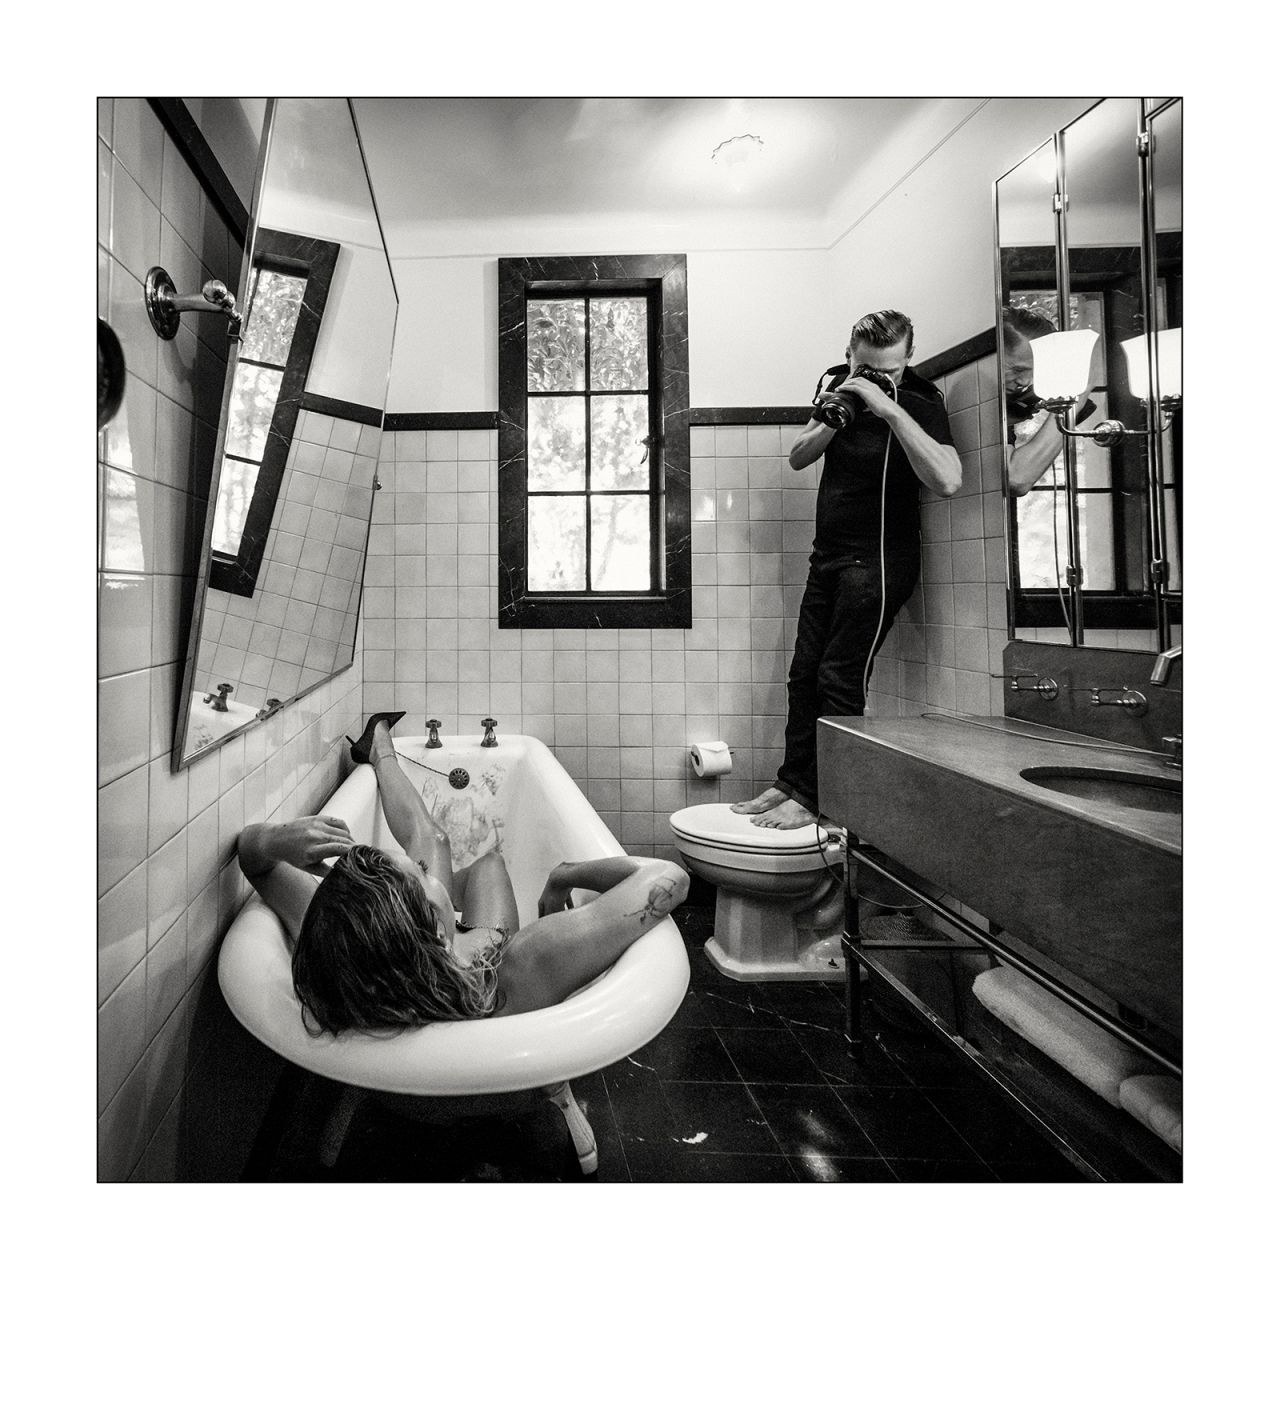 Rita Ora lies in a bathtub as photographer Bryan Adams shoots her from afar.